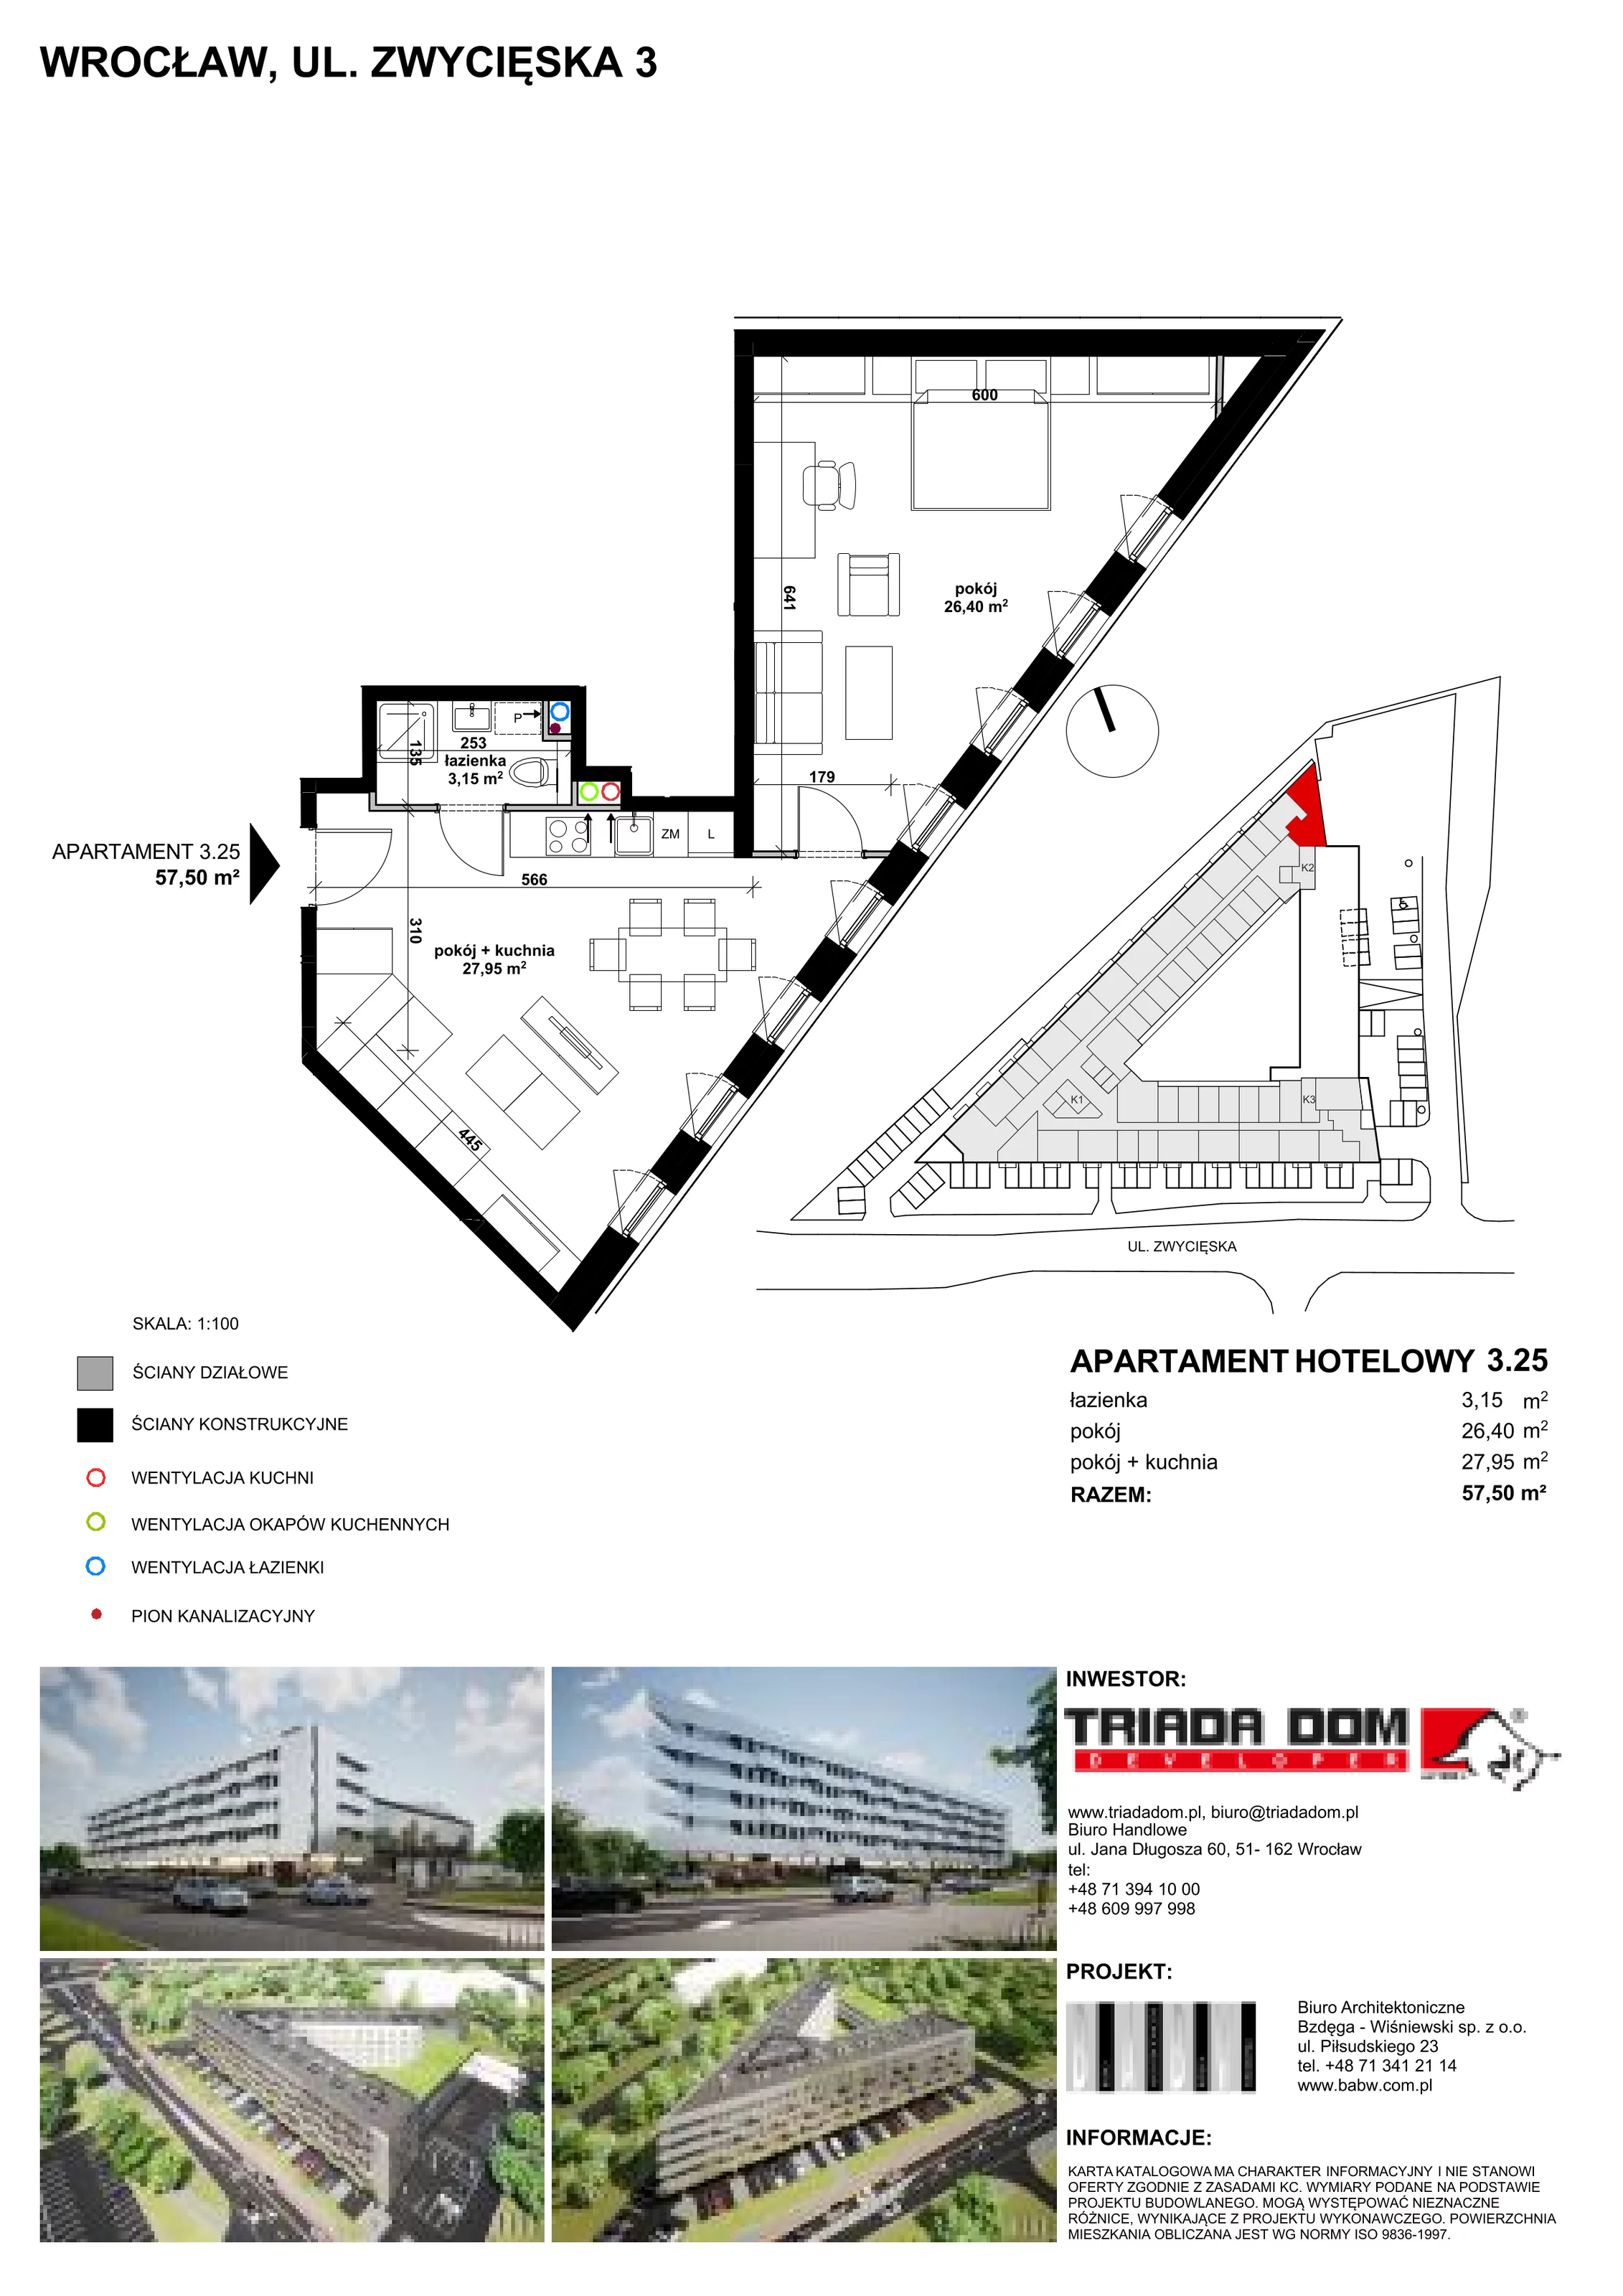 Apartament inwestycyjny 56,77 m², piętro 3, oferta nr 3/25, Apartamentowiec Zwycięska 3, Wrocław, Krzyki-Partynice, Krzyki, ul. Zwycięska 3